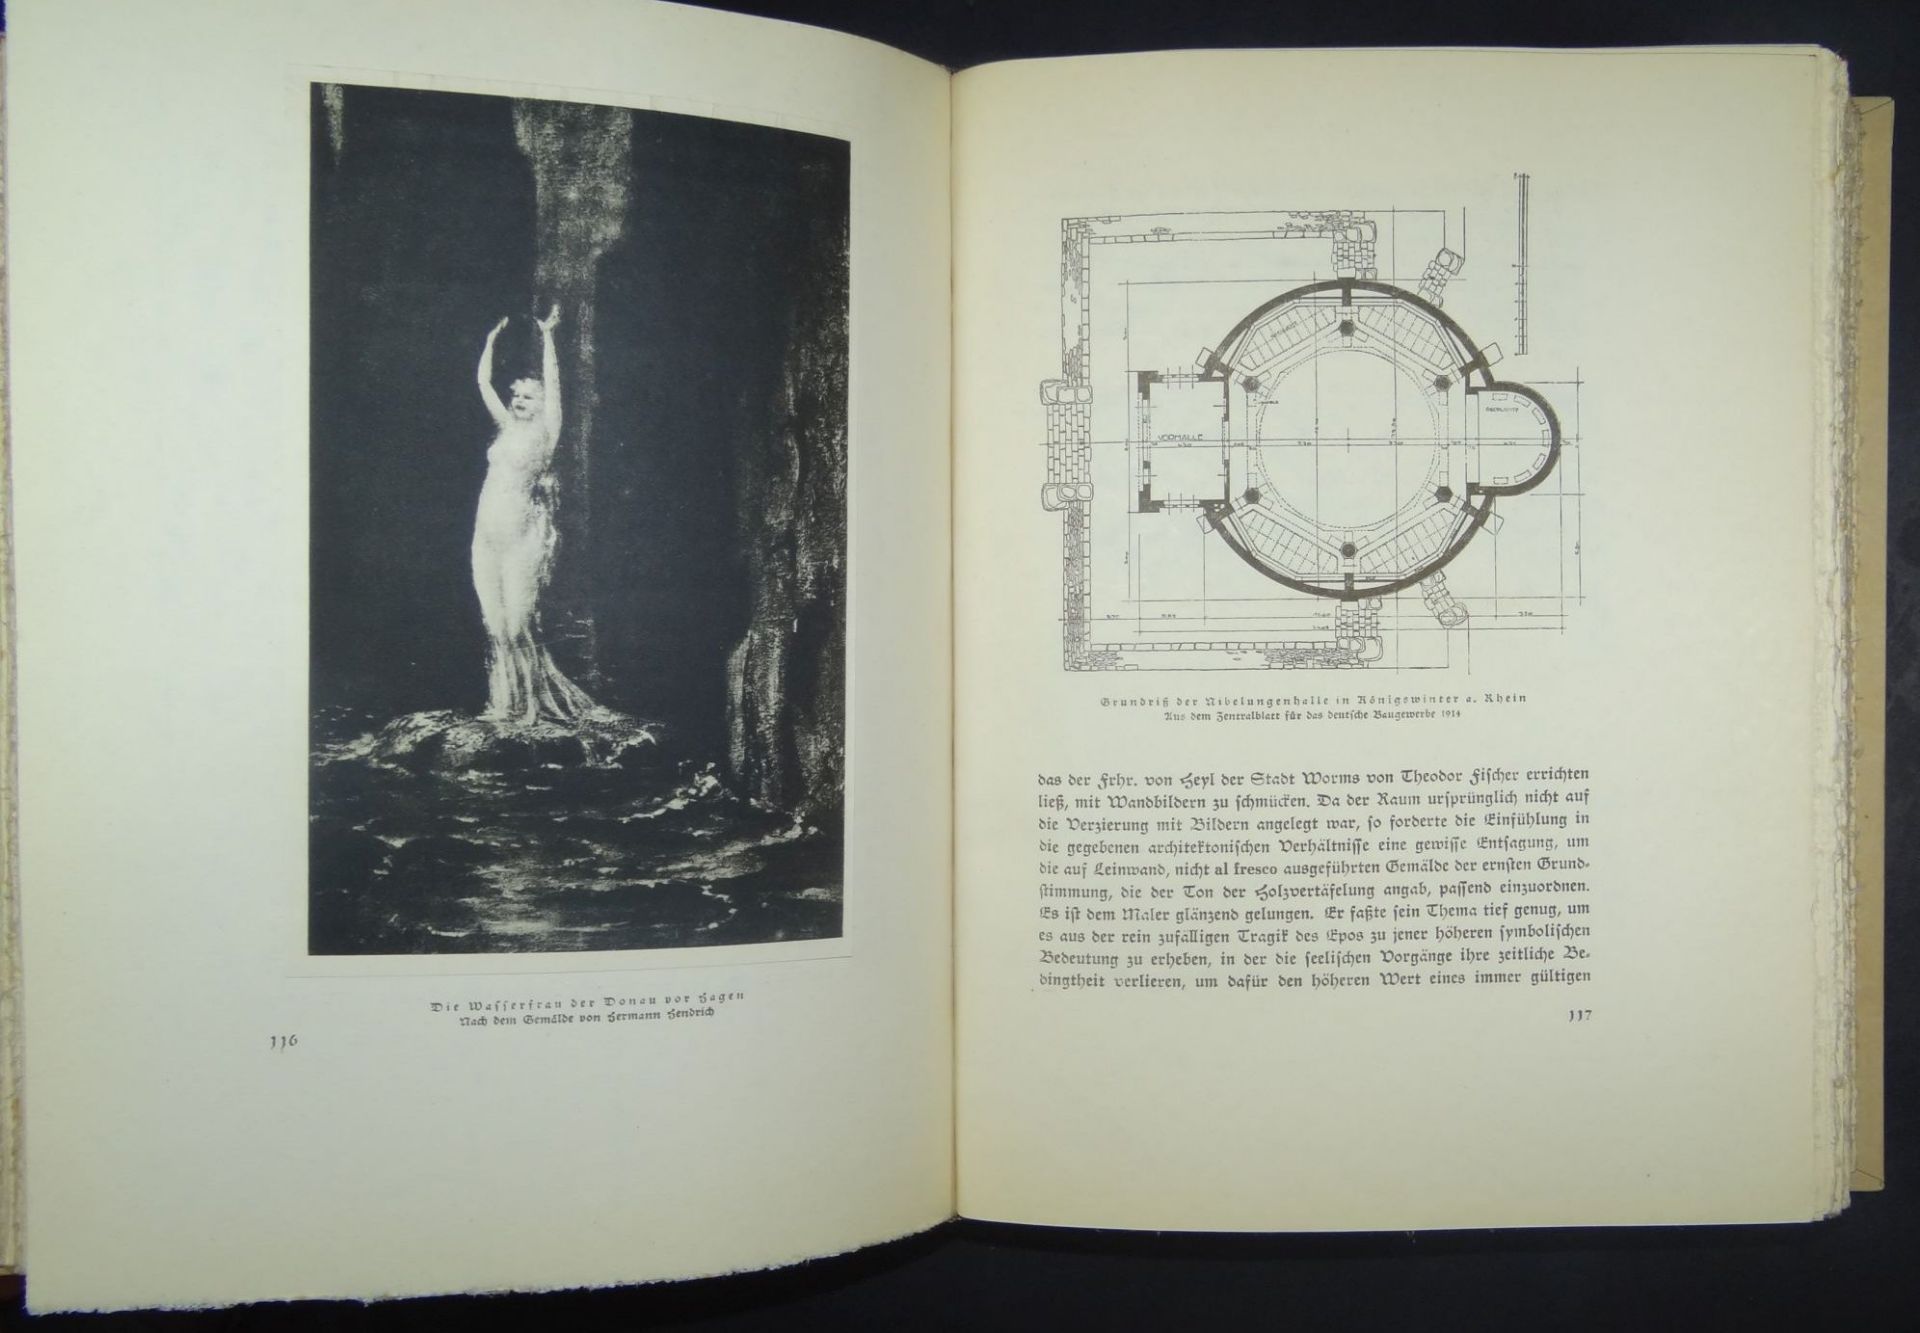 Das Nibelungen Lied - Richard Wagner Gedächtnisausgabe, 1940, für Elly Kellner, gut erhalten, mit - Bild 6 aus 9